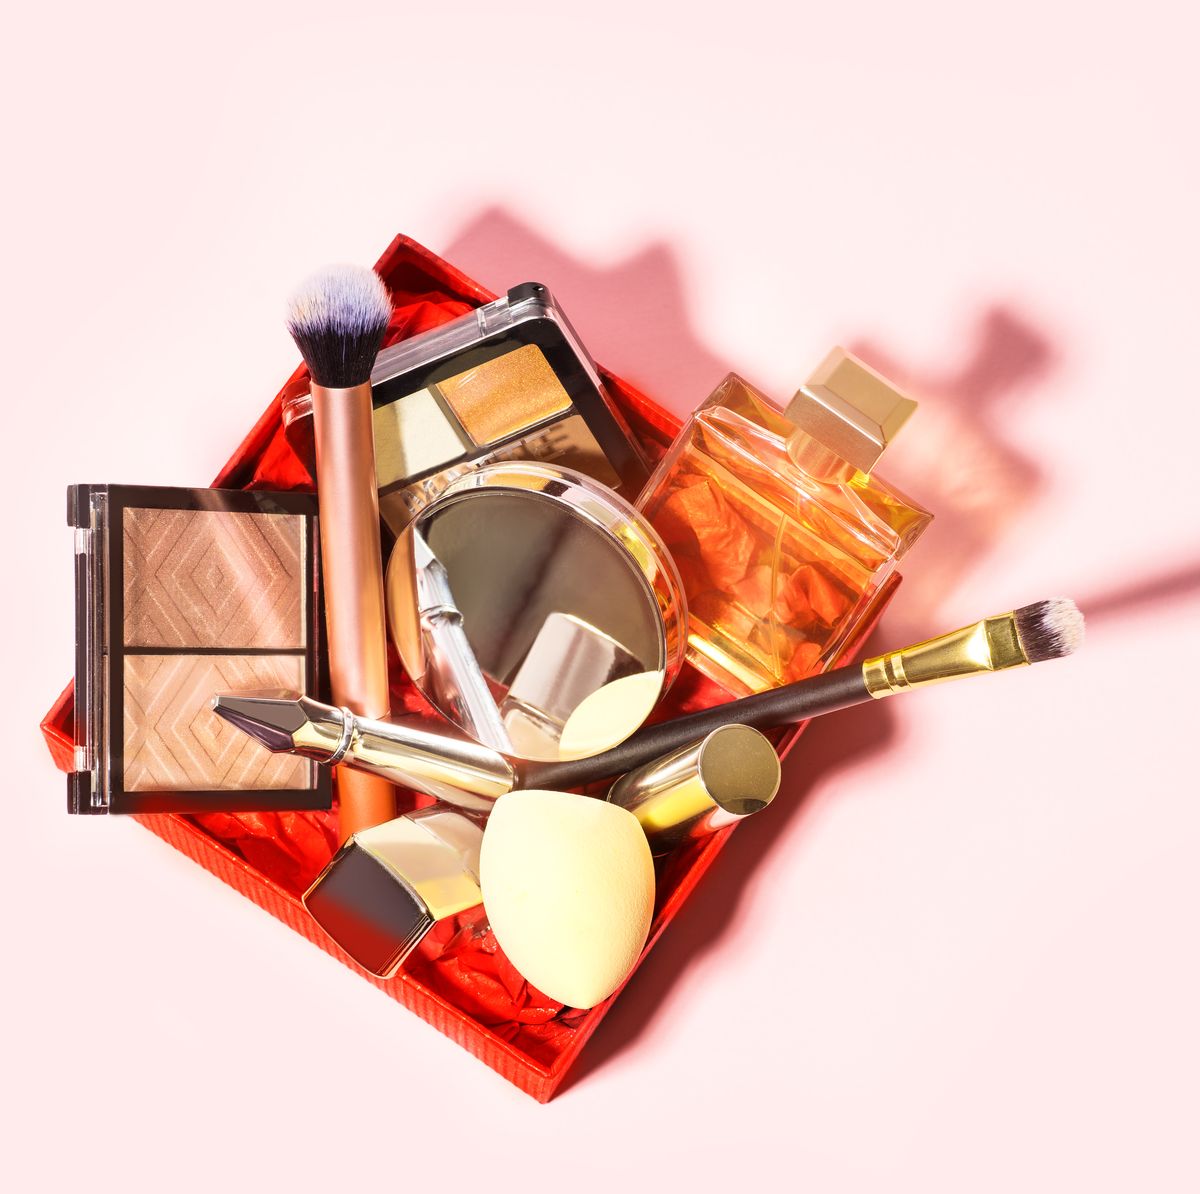 Organizador de skincare & makeup 💄💅🏼 Pedí el tuyo en nuestra